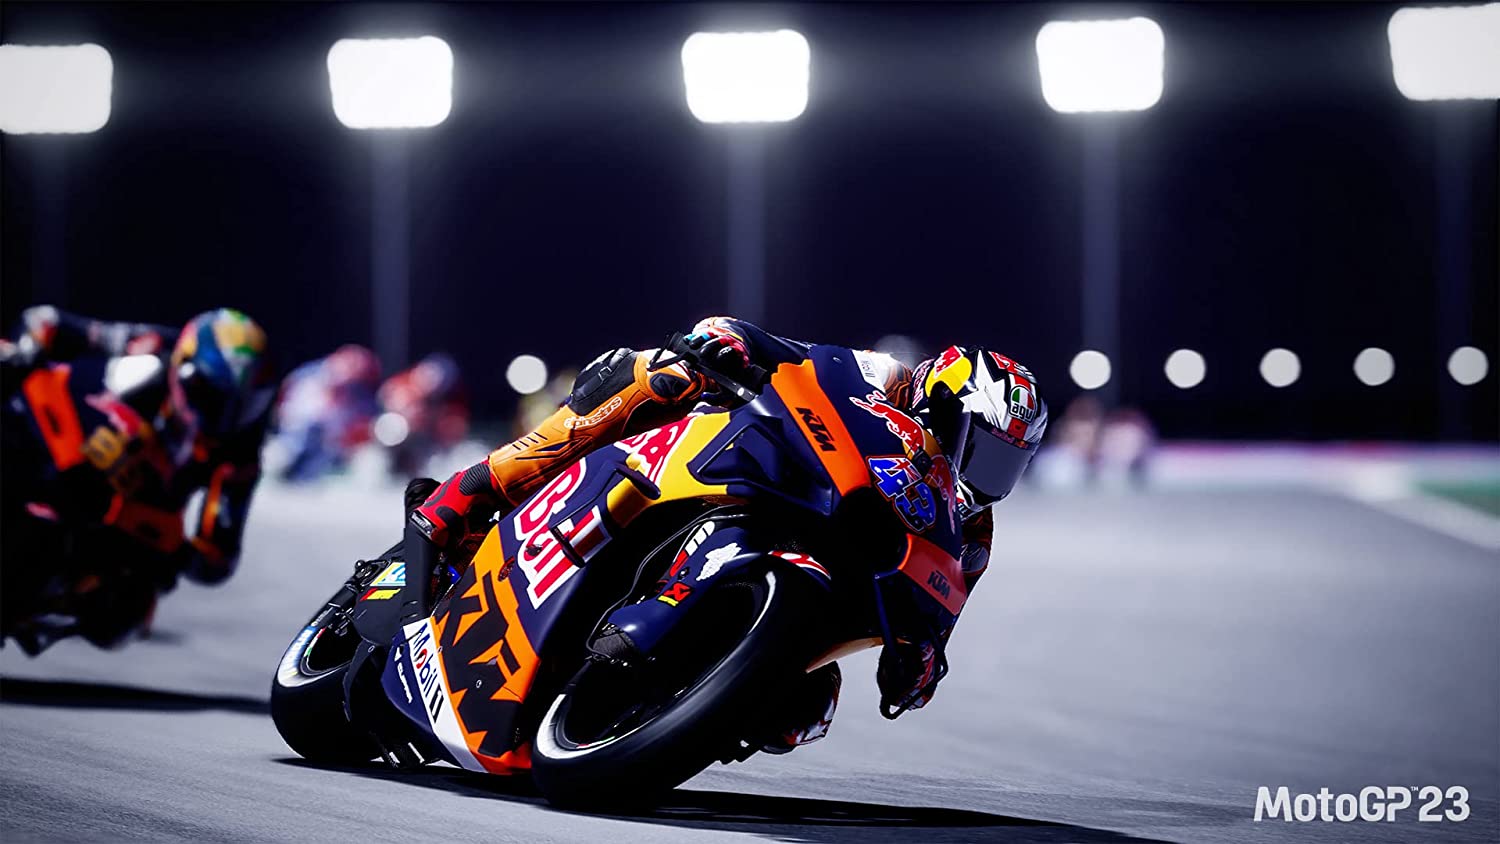 MotoGP 23 (PlayStation 4) - Le meilleur jeu de course de moto de l'année | Avppy.com